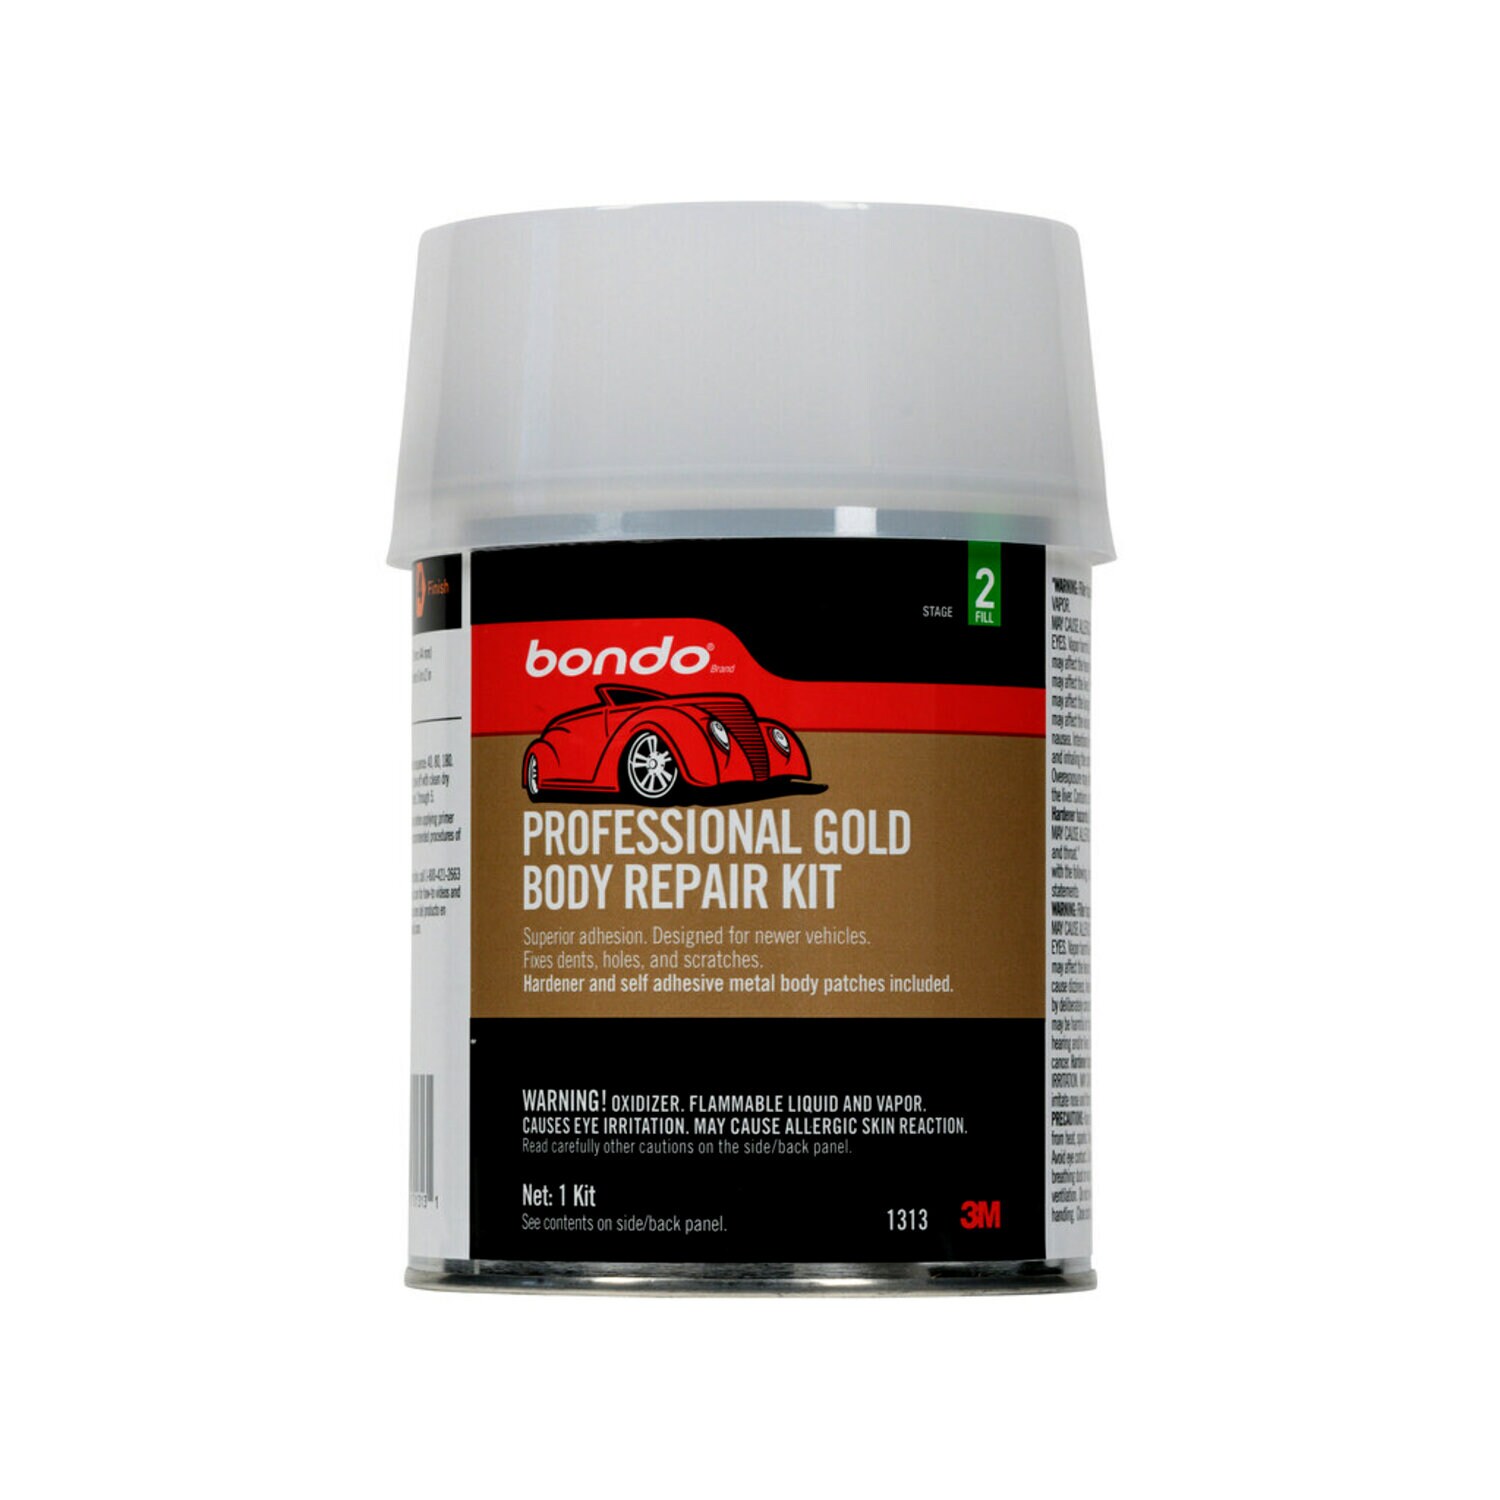 7010364416 - Bondo Professional Gold Body Repair Kit, 01313, Quart, 6 per case